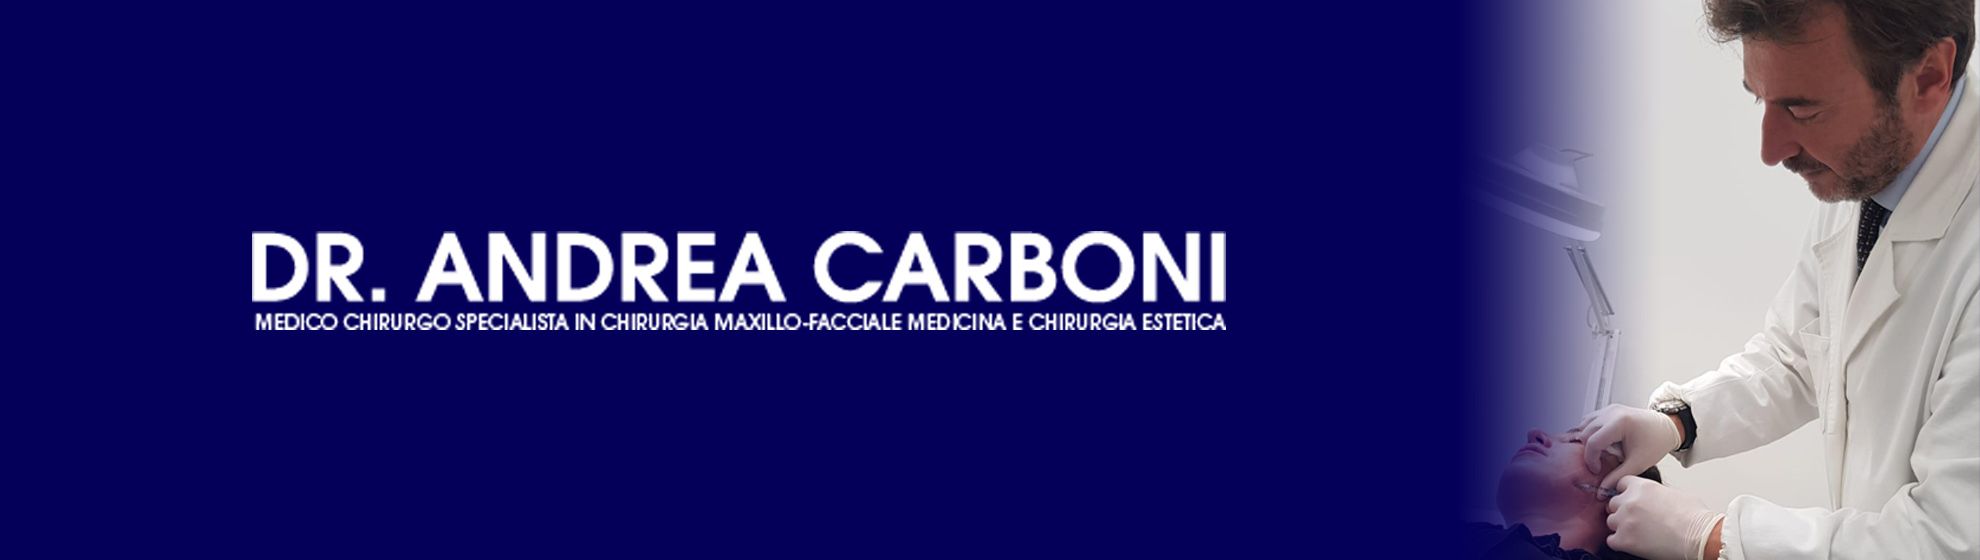 Dr Andrea Carboni